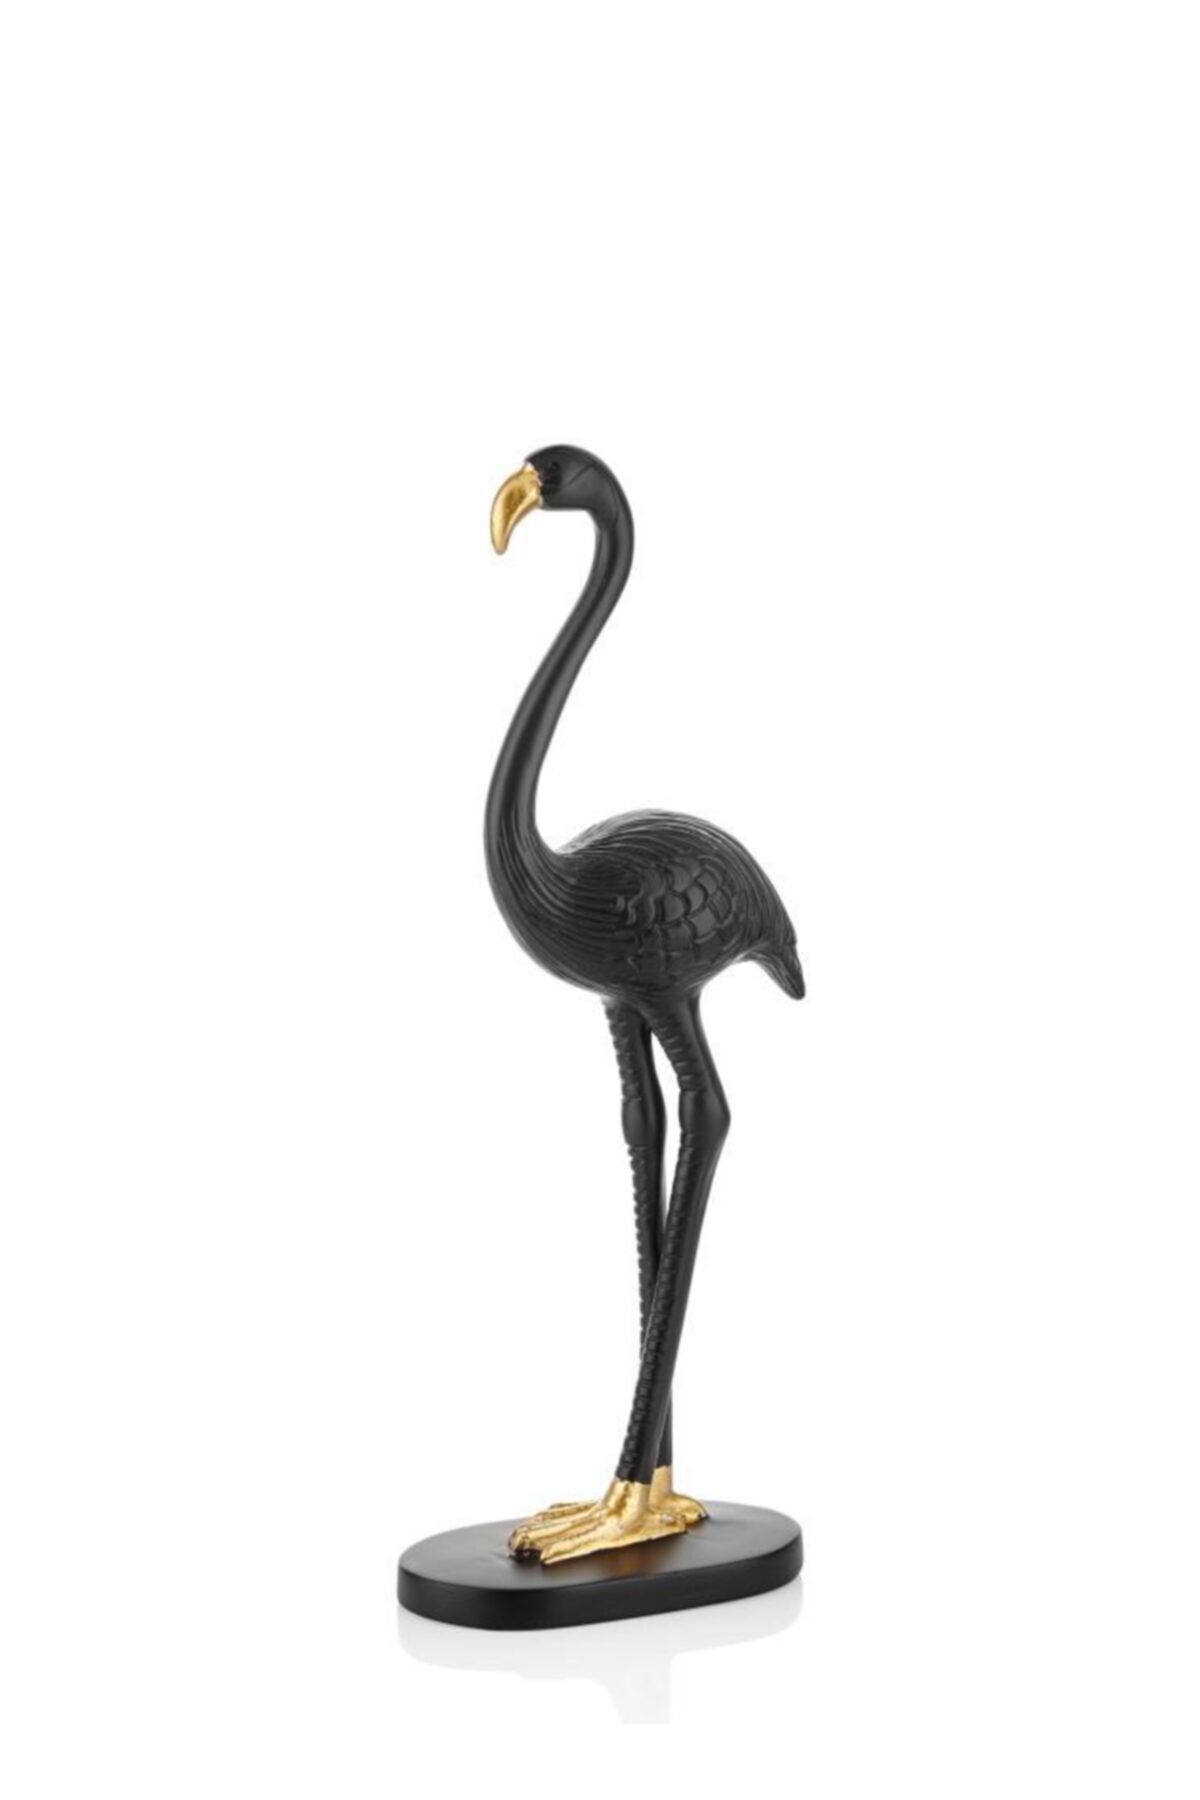 Çiçekmisin Flamingo Masaüstü Dekoratif Ojbe 33 Cm - Siyah